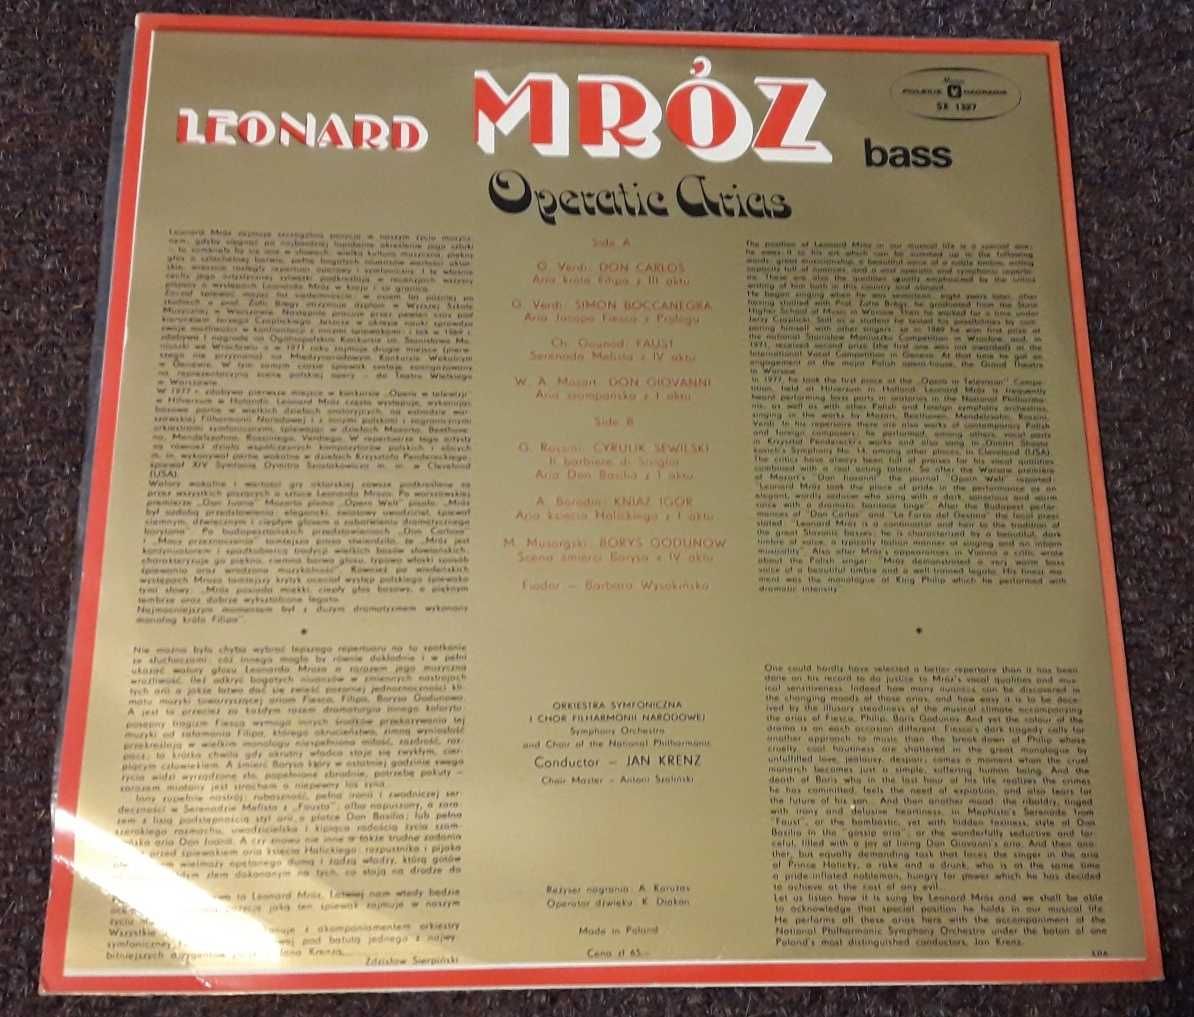 Leonard Mróz bass "Operatic arias" płyta długogrająca winyl LP